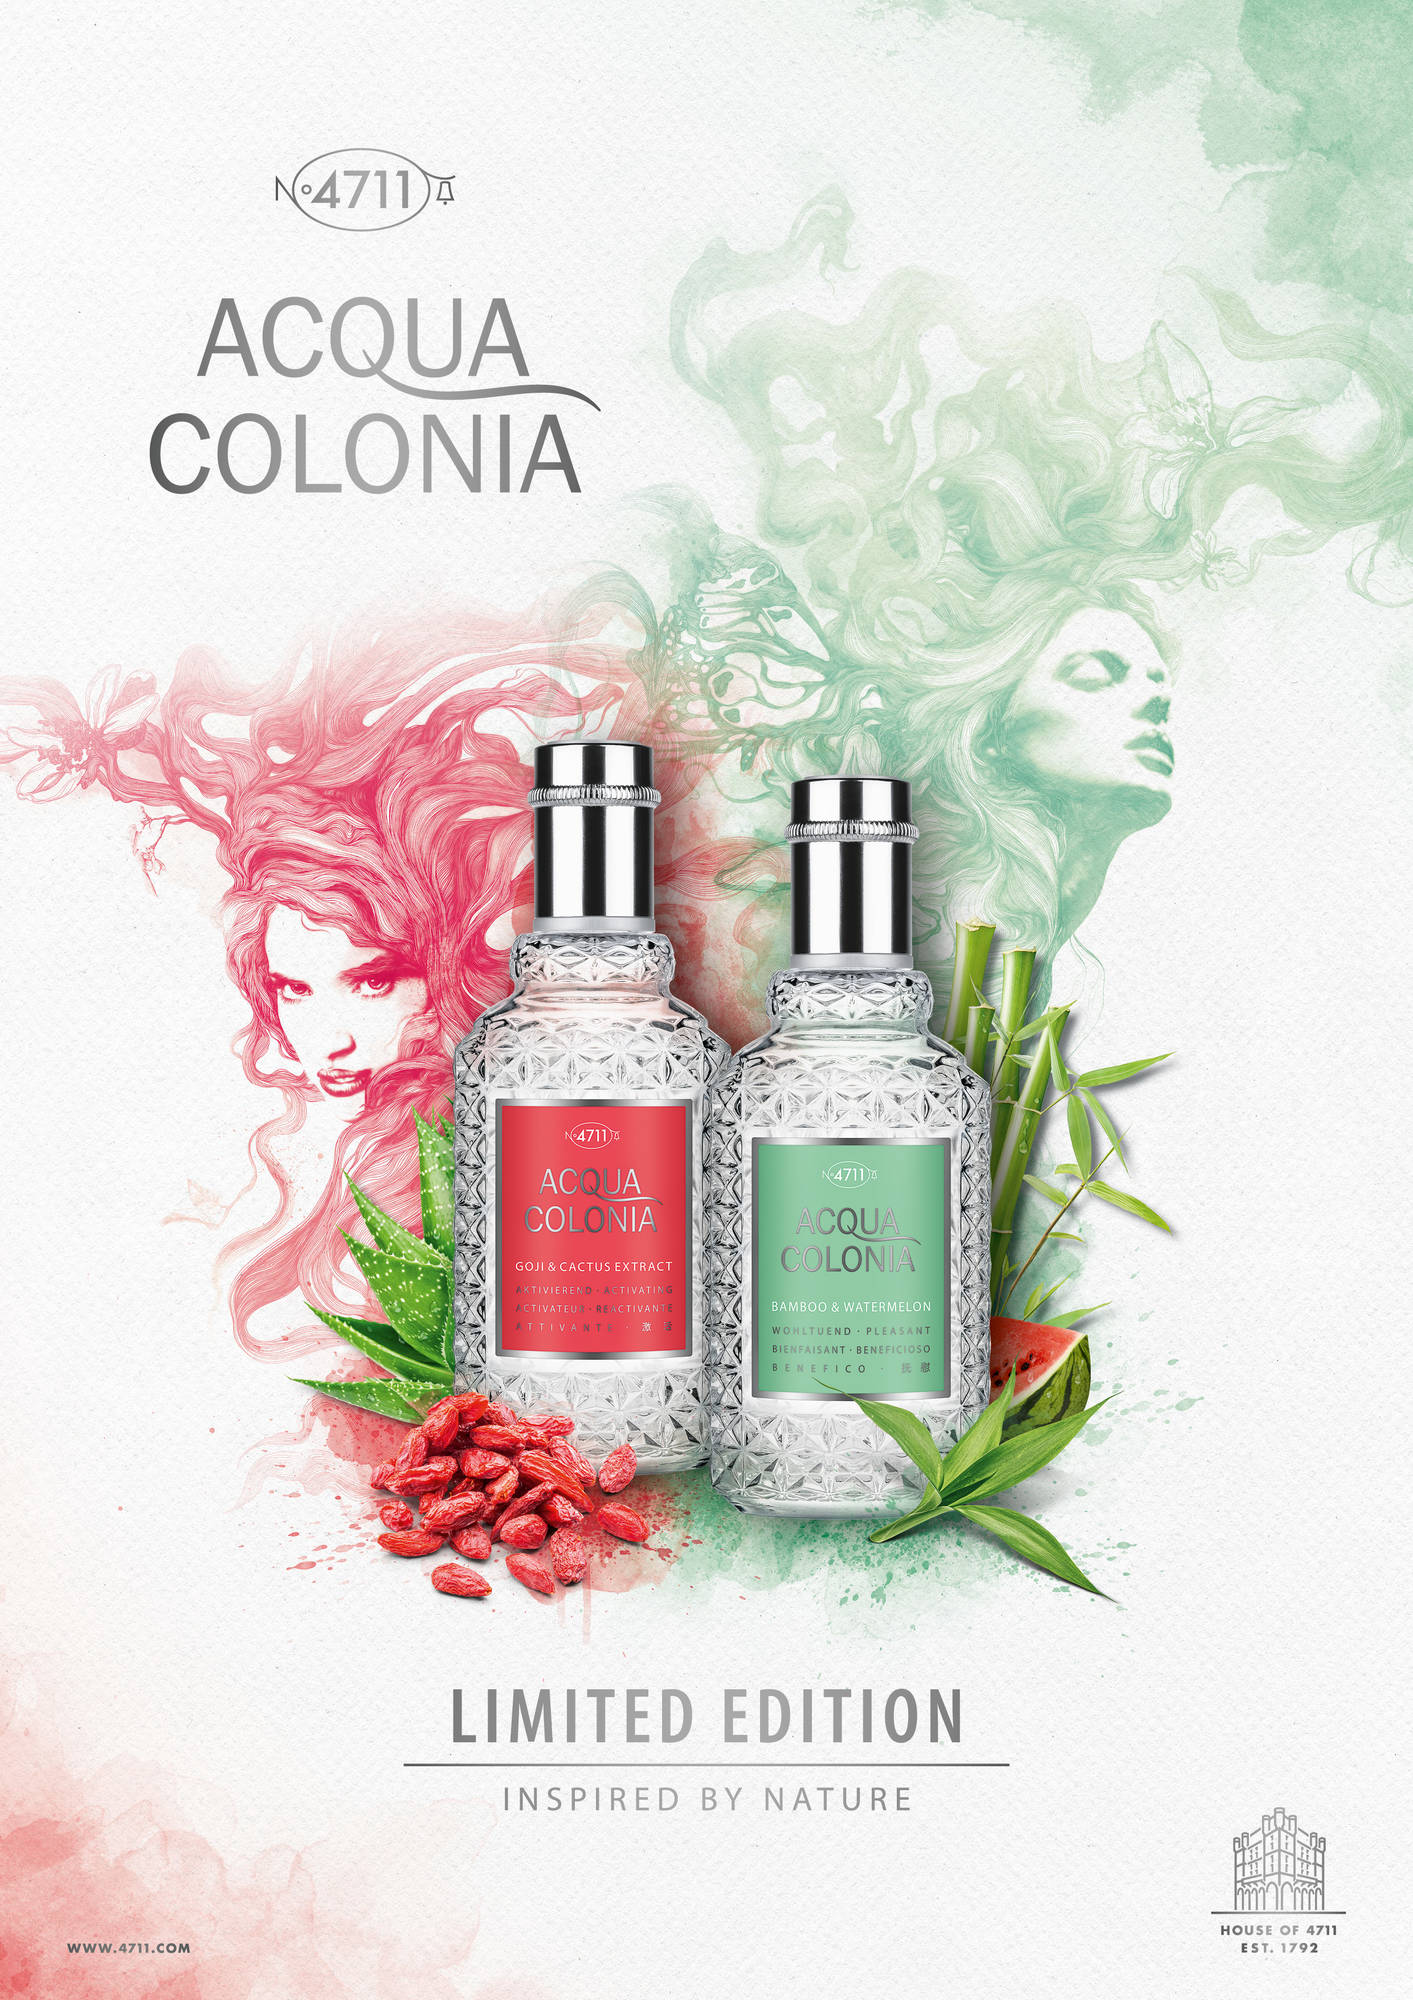 4711 Acqua Colonia Goji & Cactus